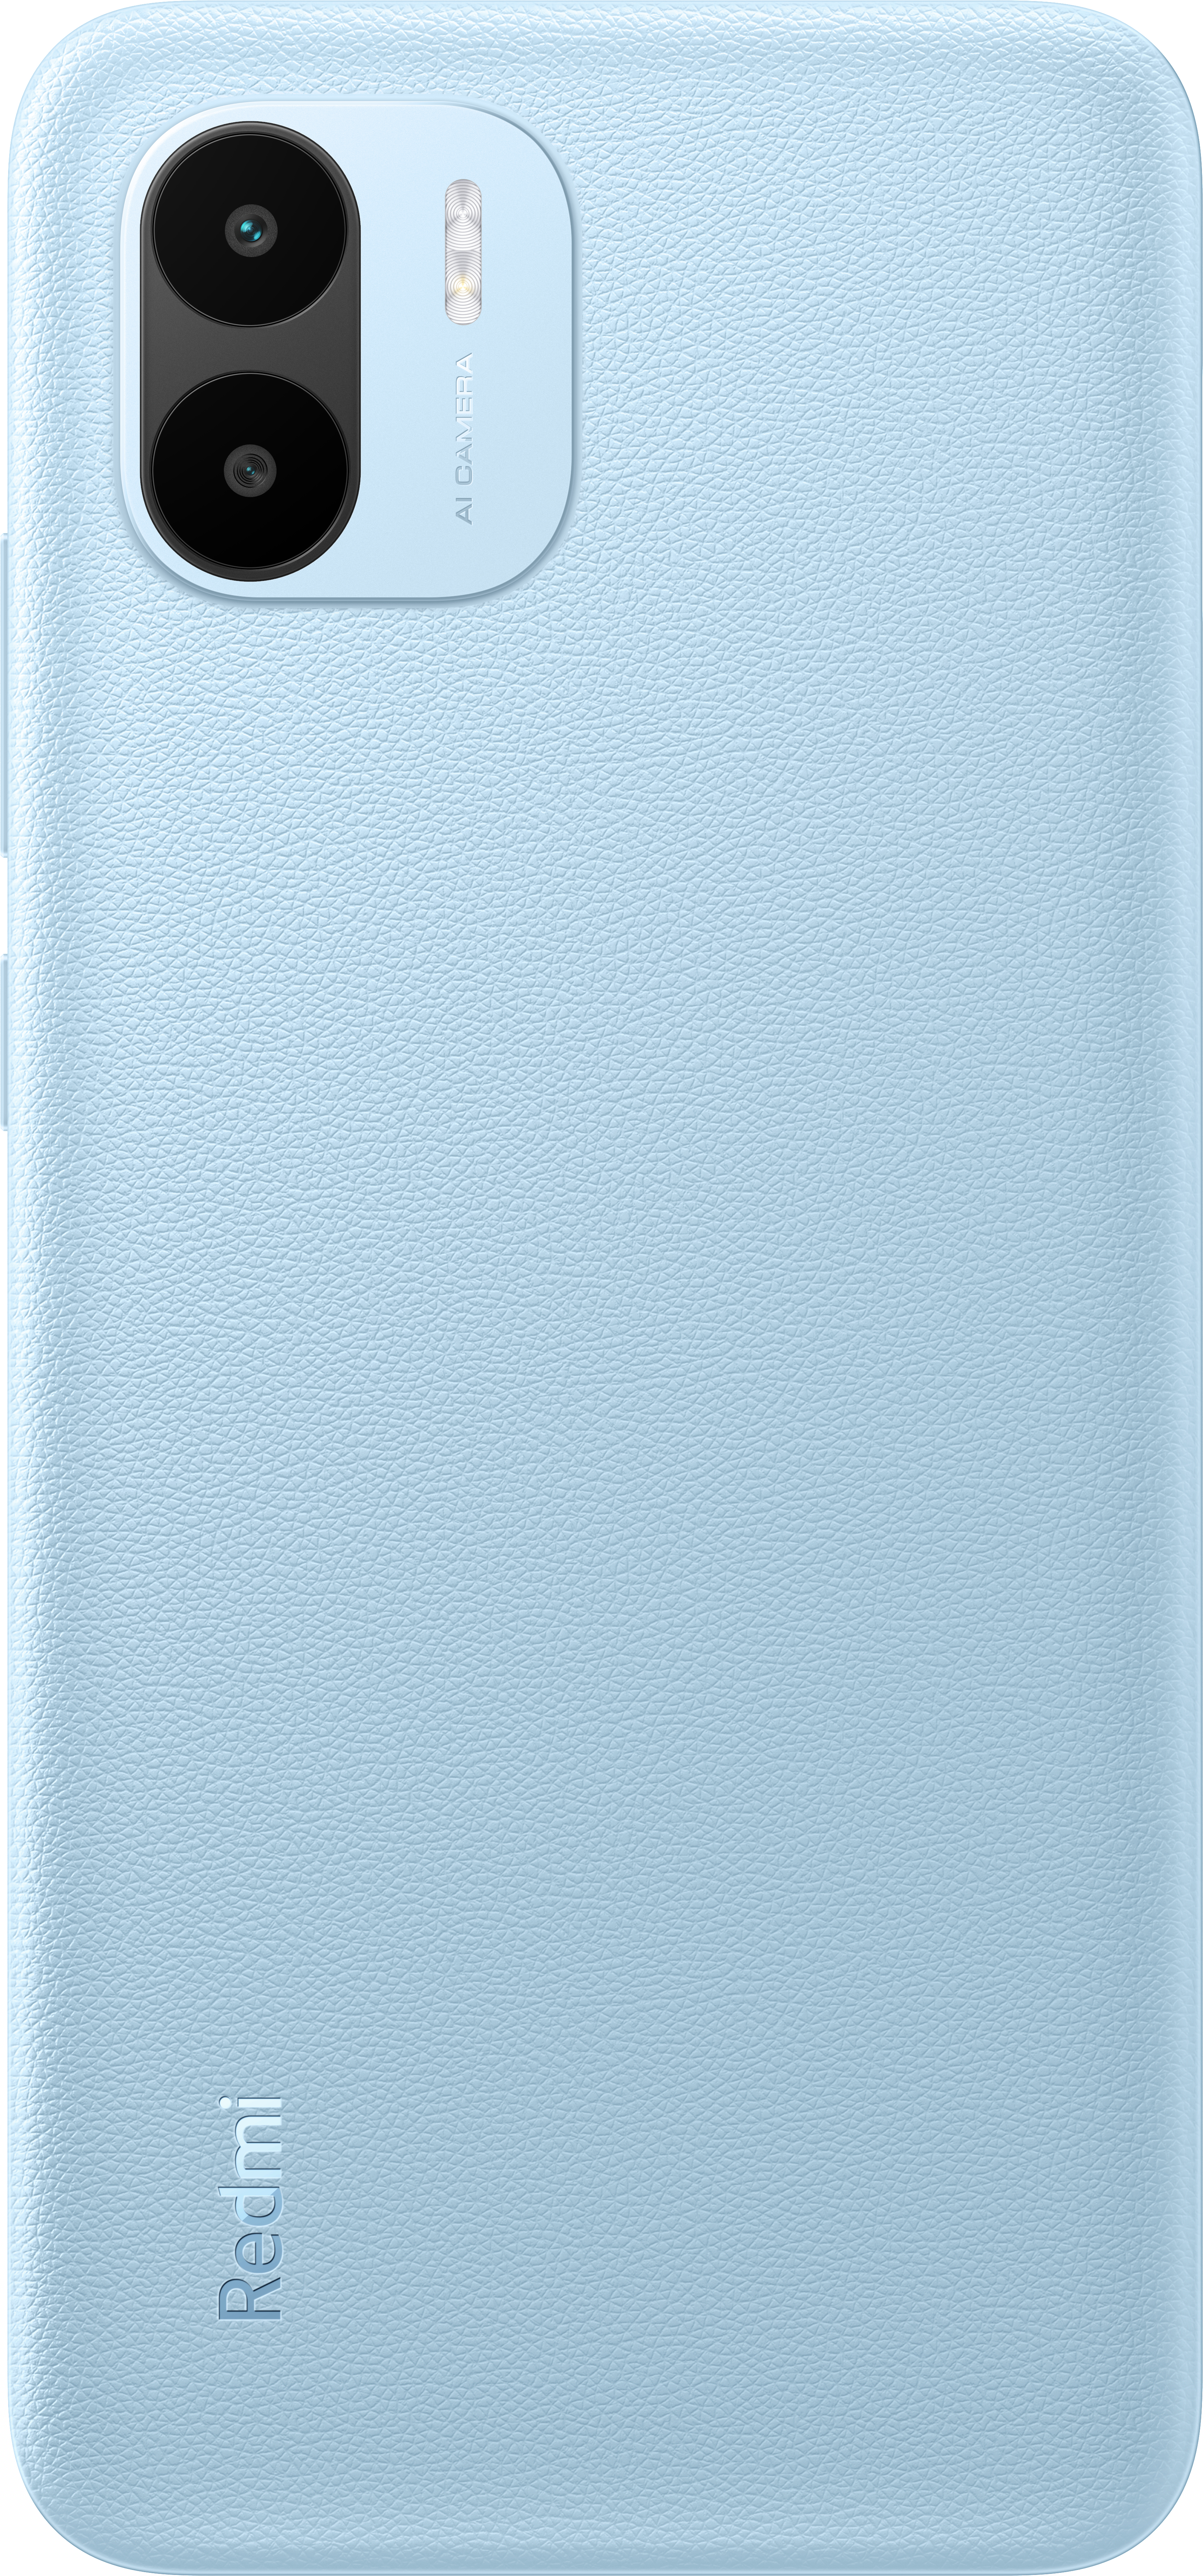 XIAOMI Redmi A2 32 SIM Blue Light Dual GB